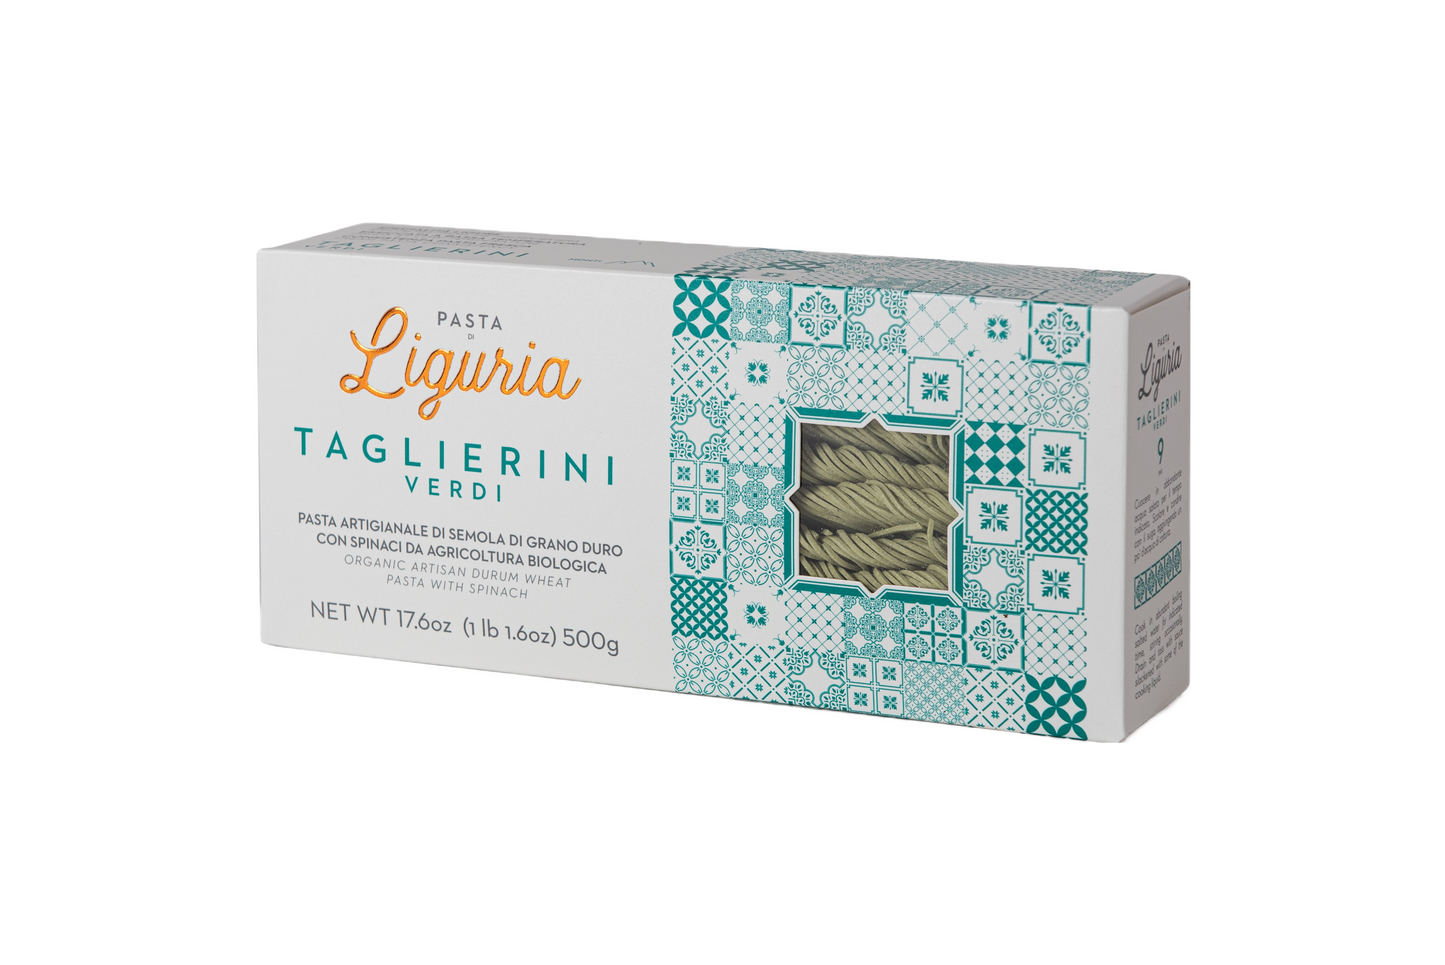 Organic Taglierini Verdi by Pasta di Liguria